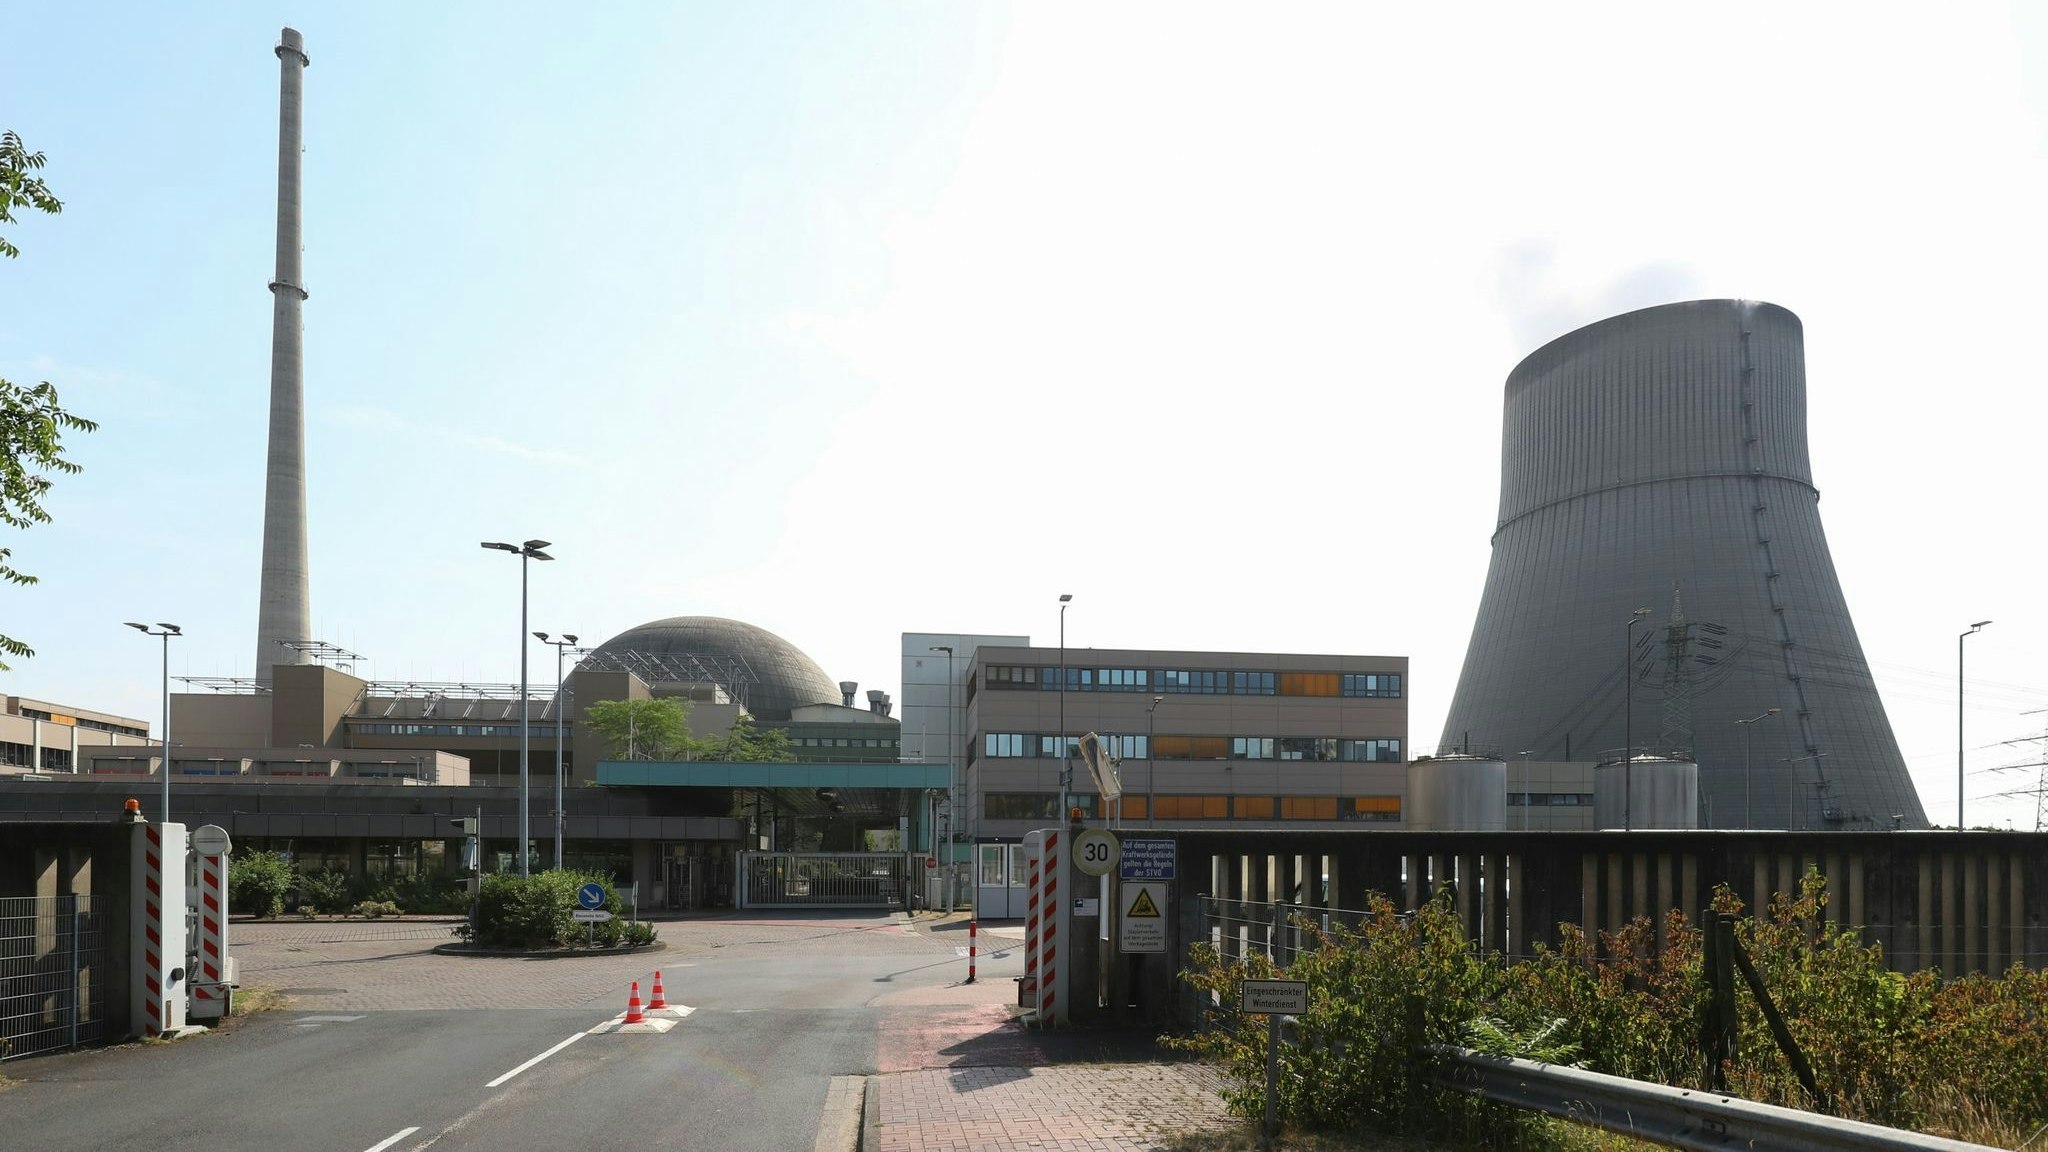 Blick auf das Kernkraftwerk Emsland (KKE) mit Reaktor und Kühlturm: Dieses, als auch die anderen zwei Werke, sollen bis maximal Mitte April kommenden Jahres weiterlaufen. Foto: dpa/Gentsch